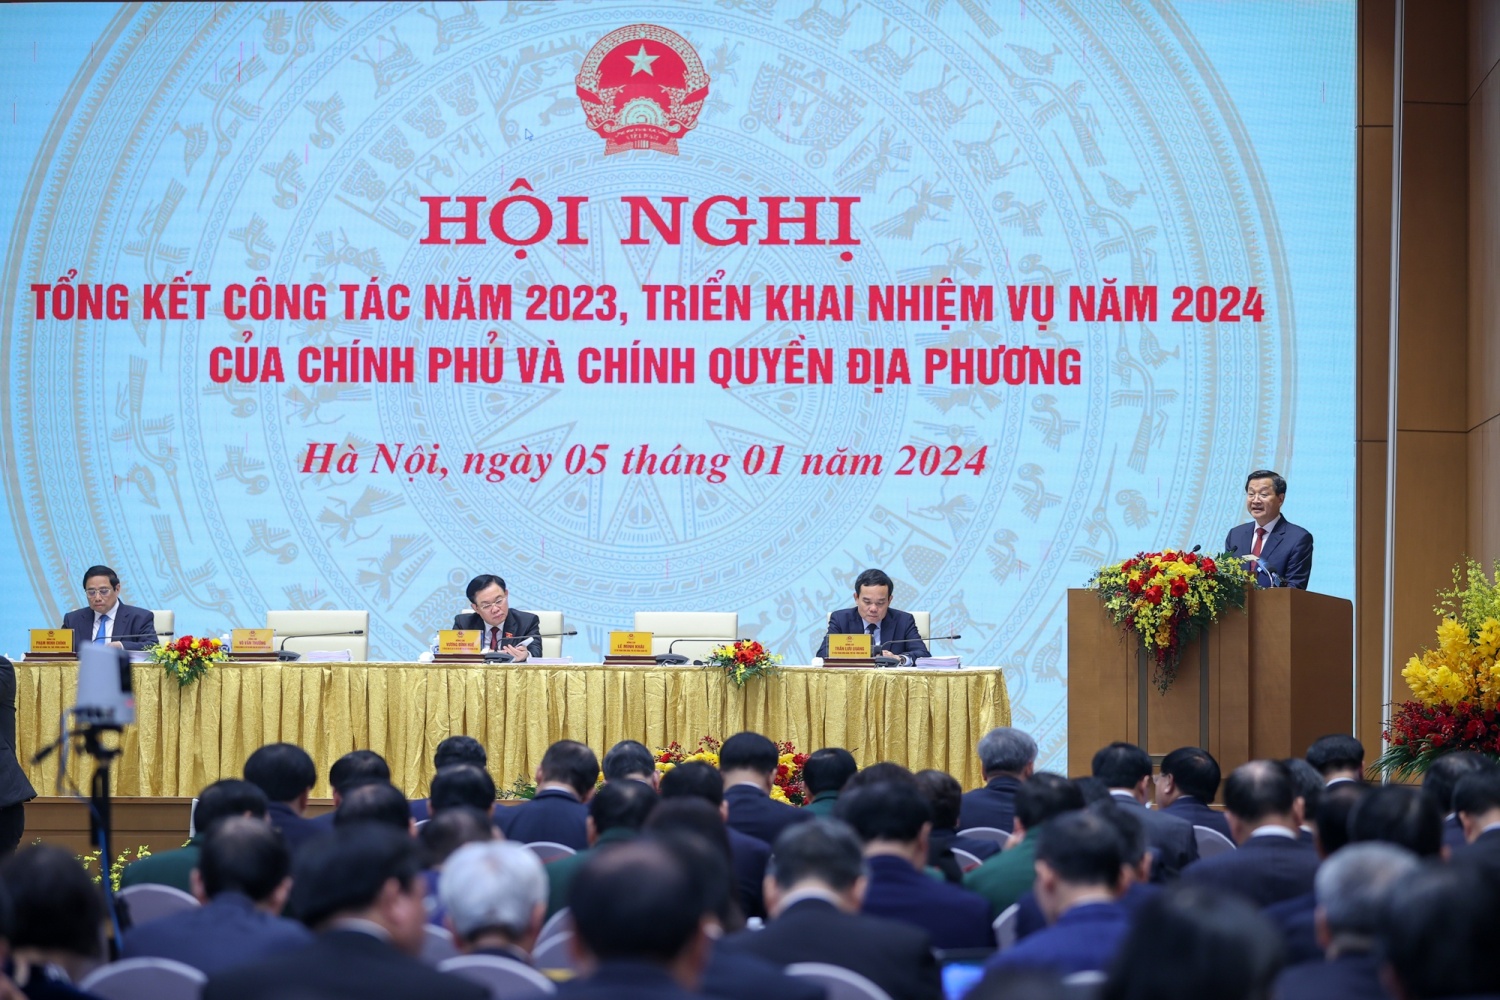 Hội nghị Chính phủ và chính quyền địa phương tổng kết công tác năm 2023, triển khai nhiệm vụ năm 2024